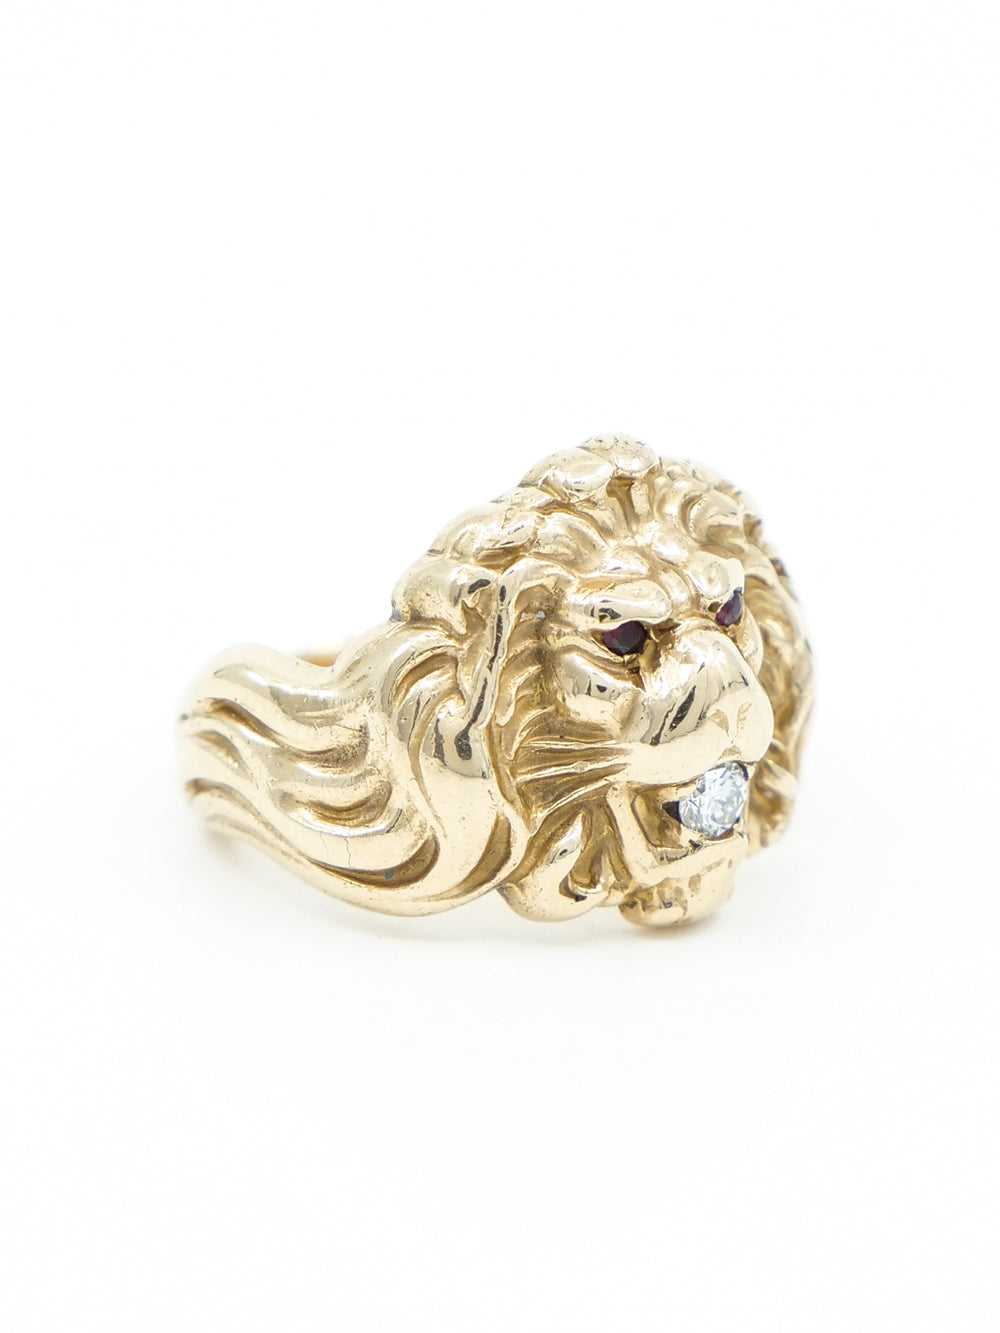 Antique 14k Lion Ring - image 4